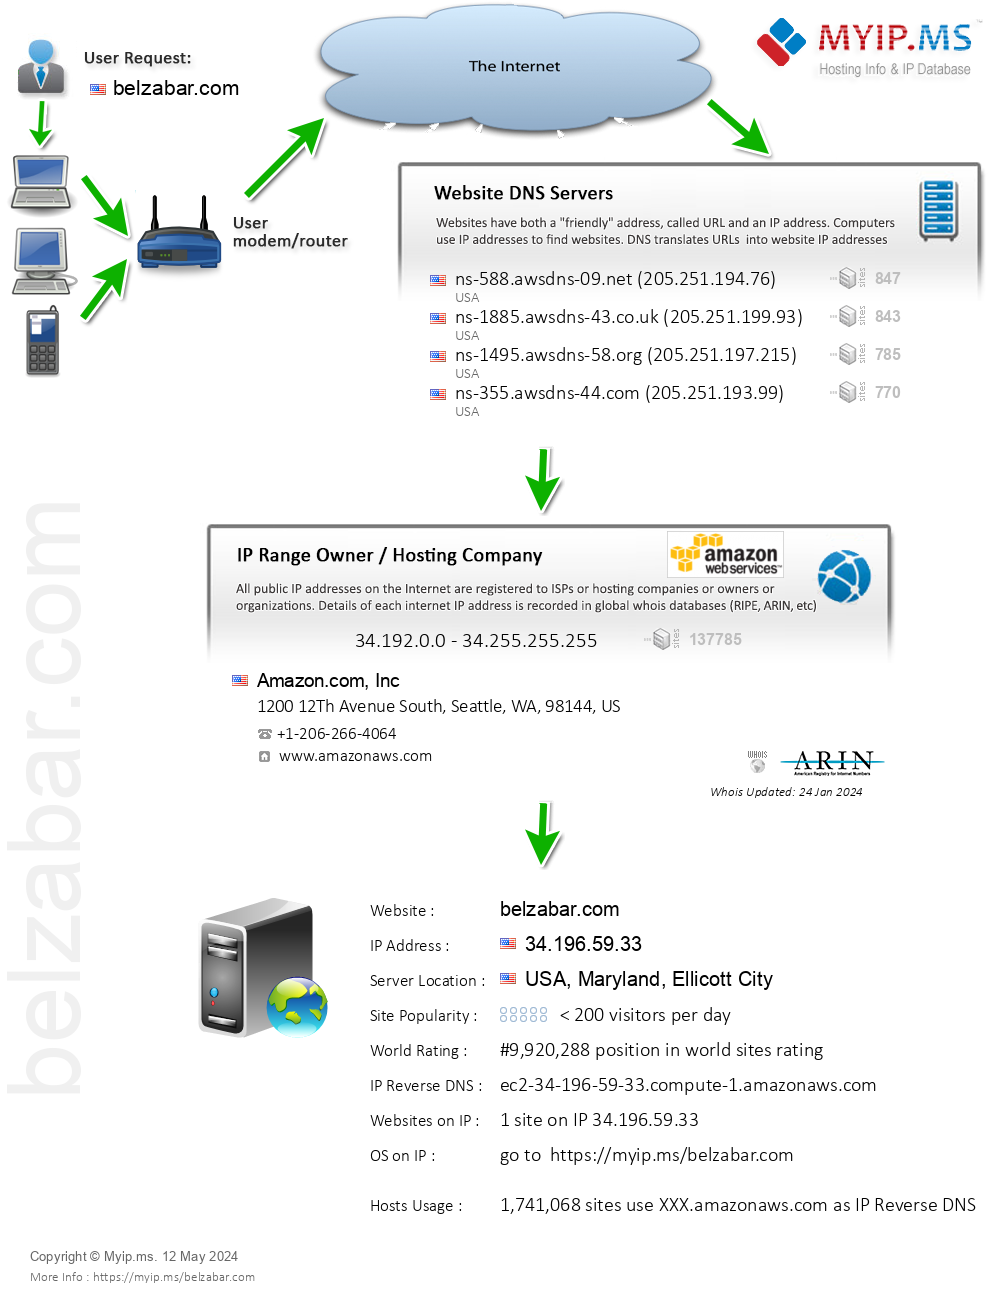 Belzabar.com - Website Hosting Visual IP Diagram